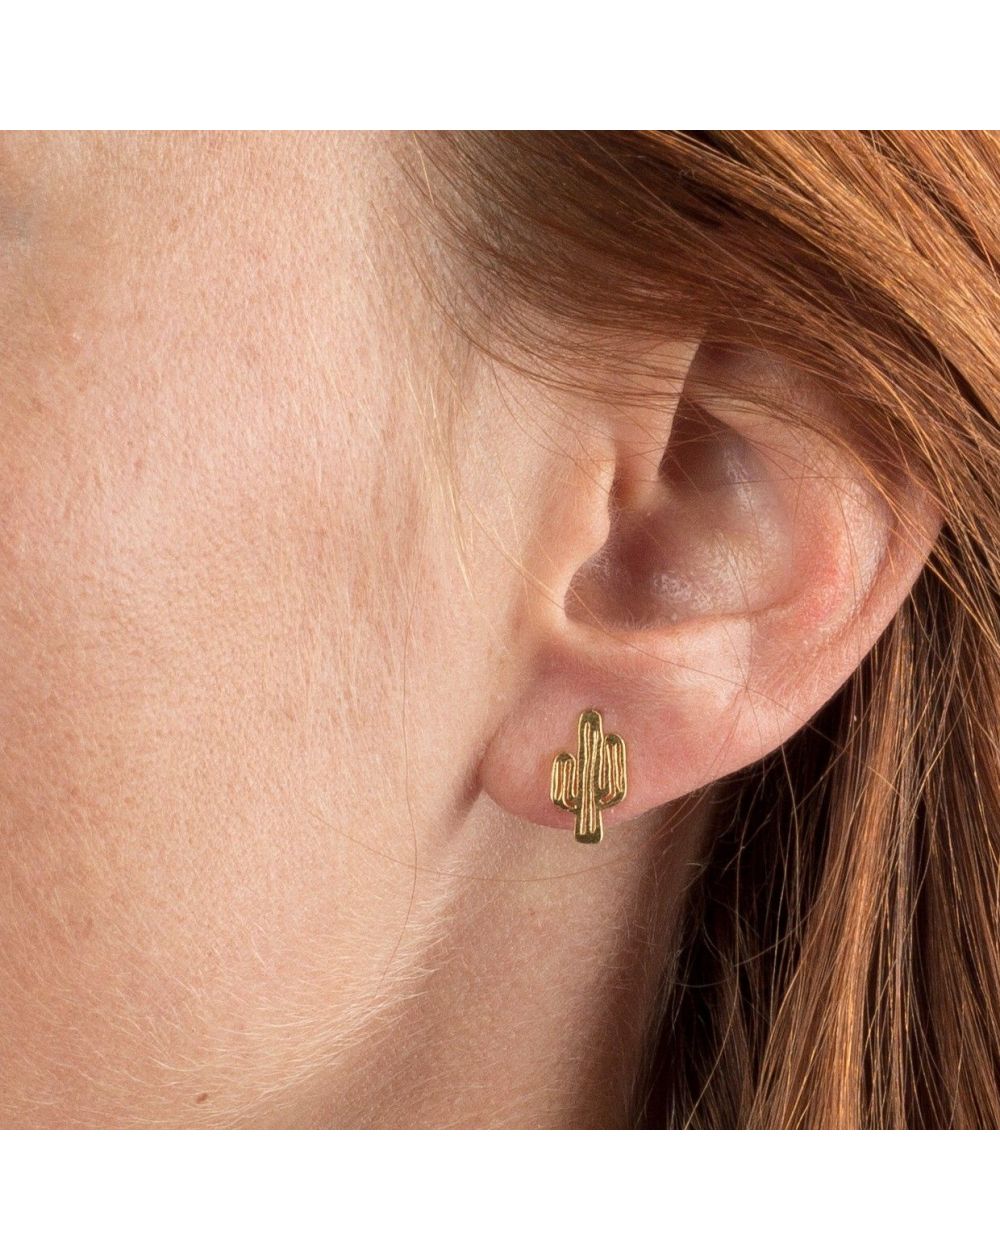 Boucles d'oreilles 7bis cactus dorées sur mannequin